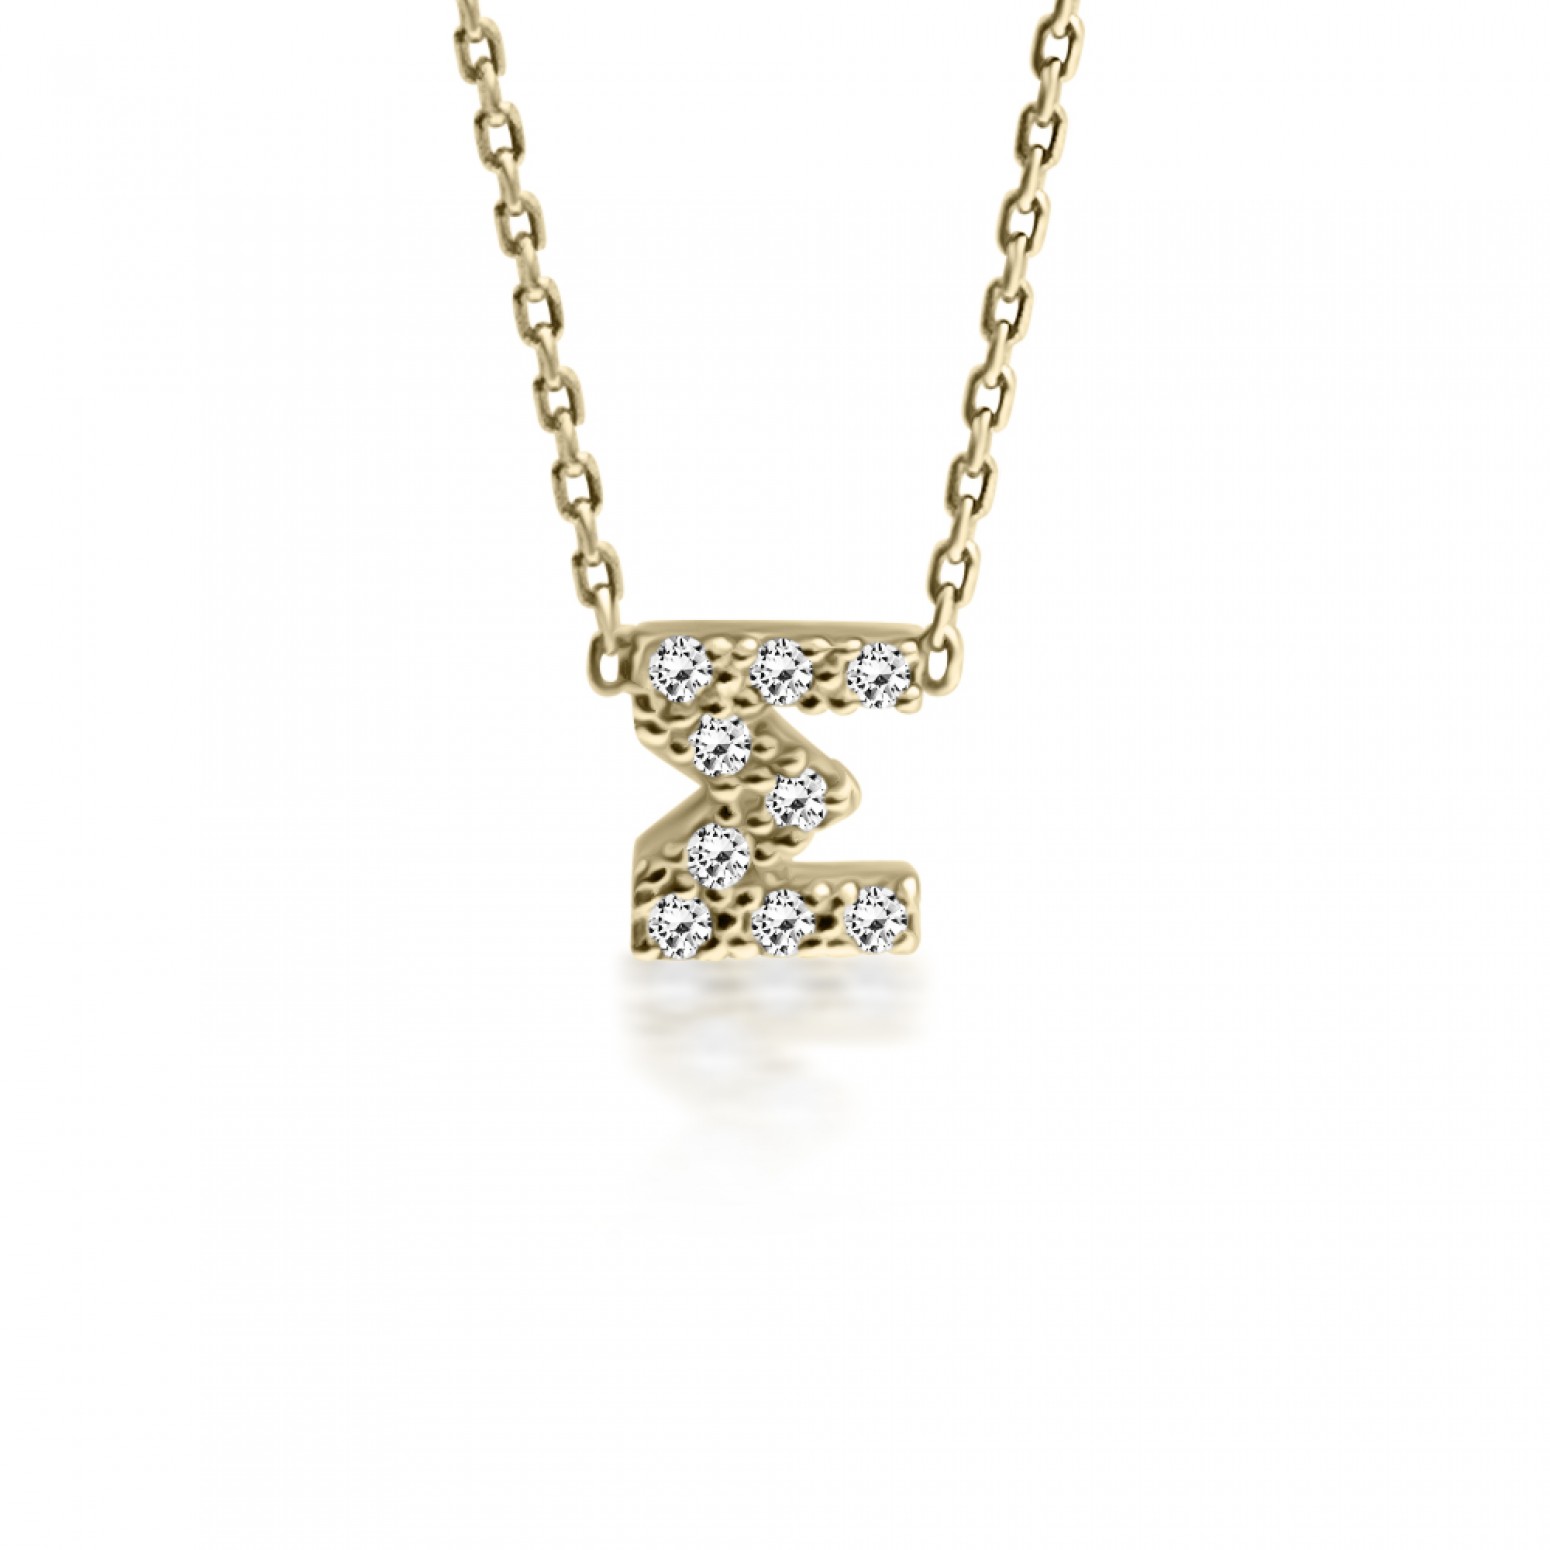 Monogram necklace Σ, Κ14 gold with zircon, ko5200 NECKLACES Κοσμηματα - chrilia.gr